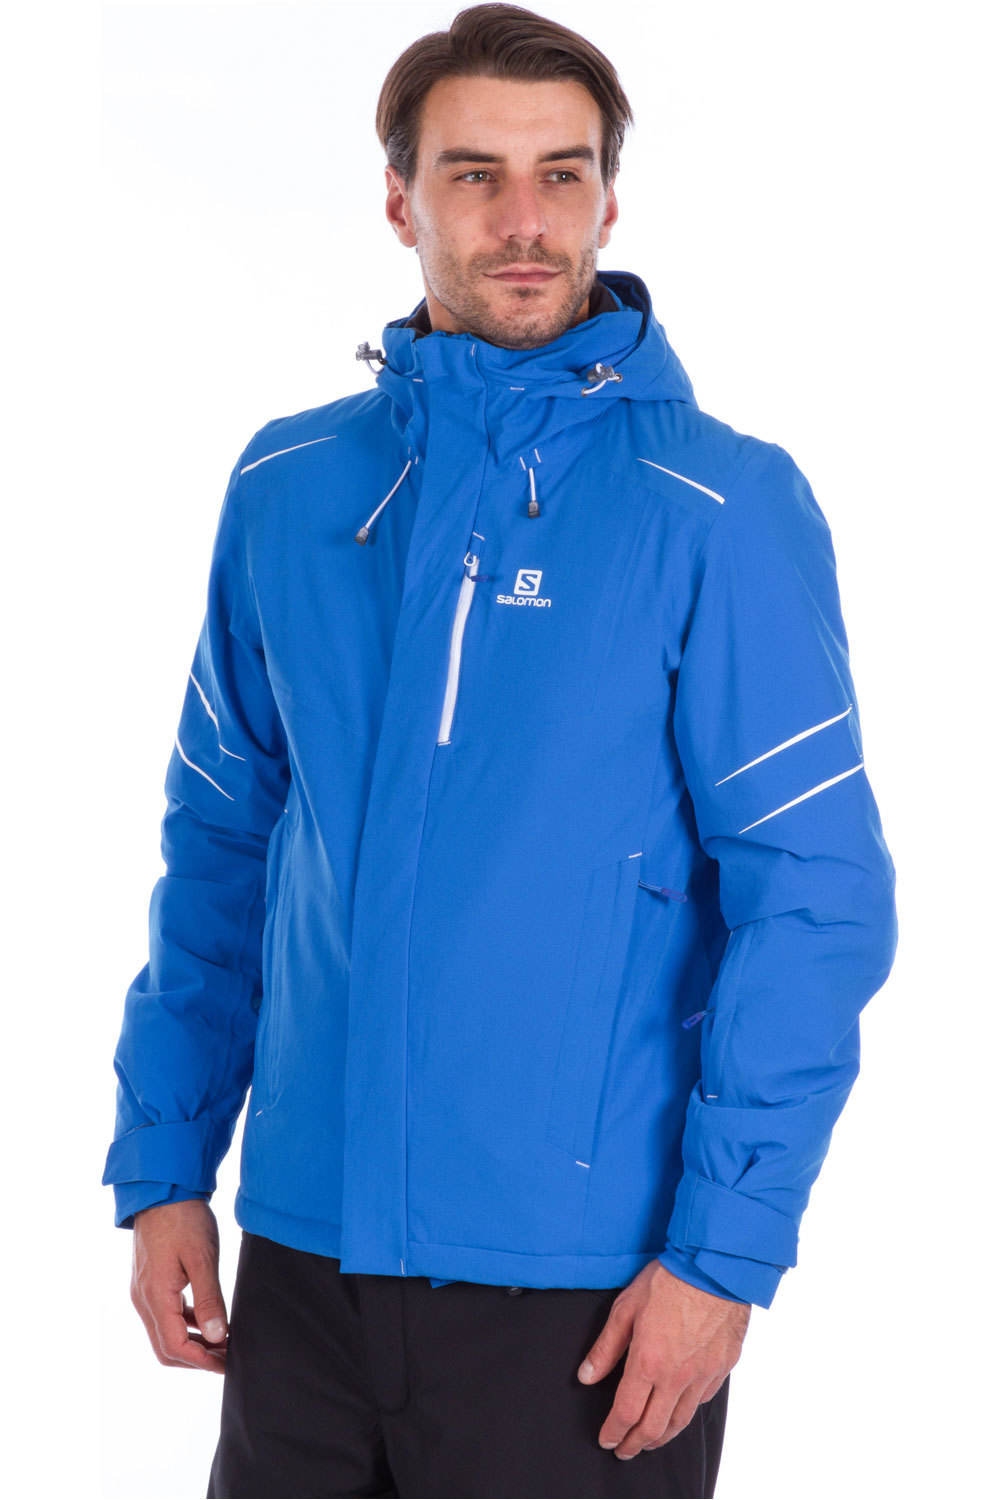 Salomon chaqueta esquí hombre ICESTORM BLUE vista frontal